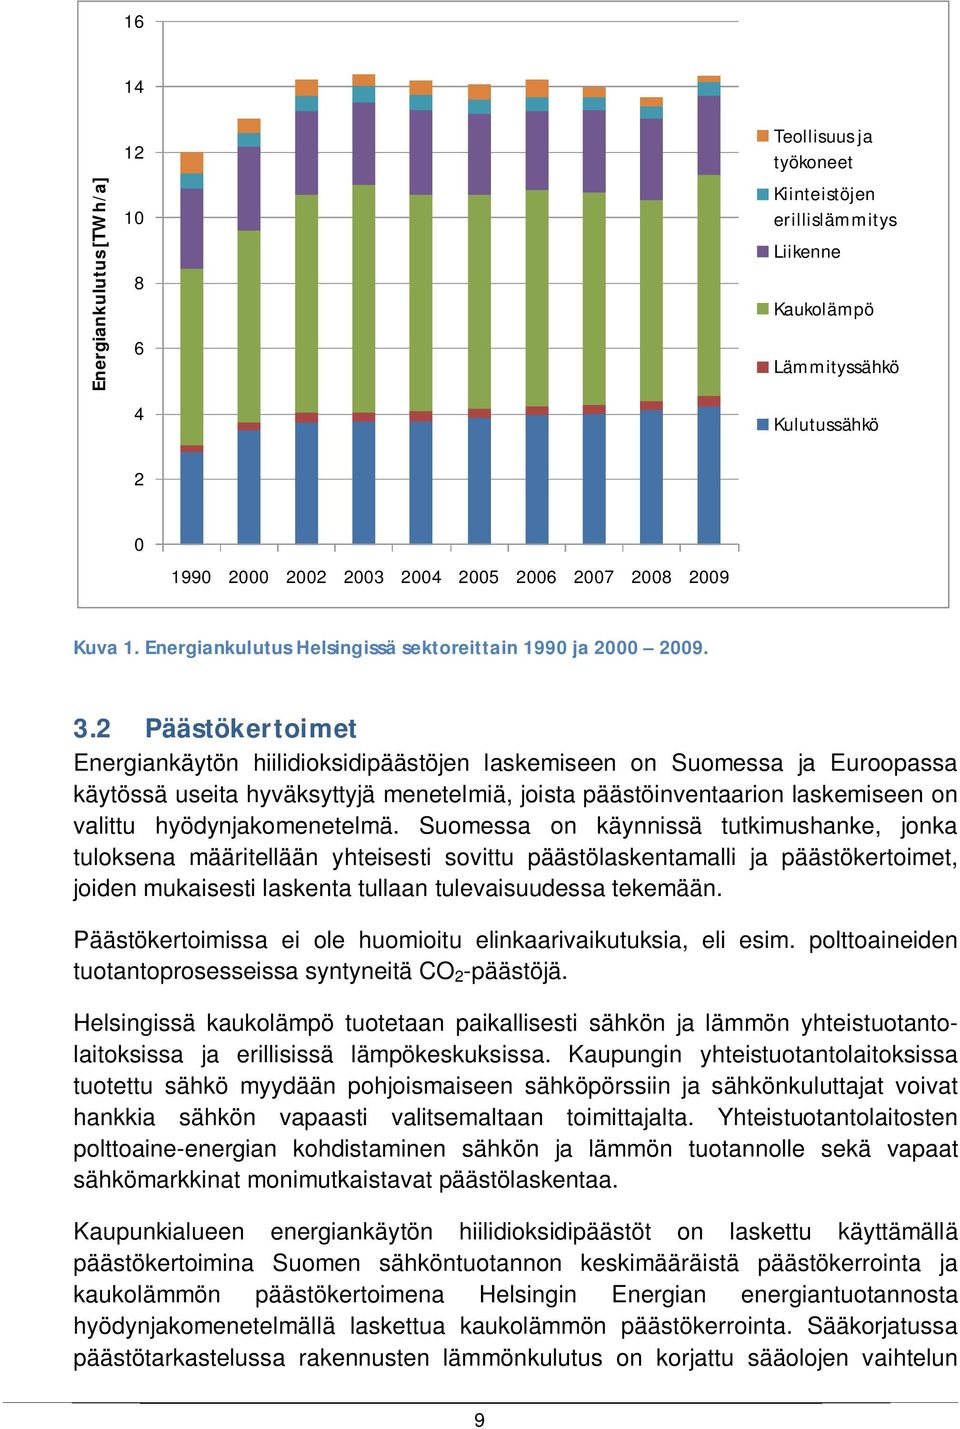 2 Päästökertoimet Energiankäytön hiilidioksidipäästöjen laskemiseen on Suomessa ja Euroopassa käytössä useita hyväksyttyjä menetelmiä, joista päästöinventaarion laskemiseen on valittu